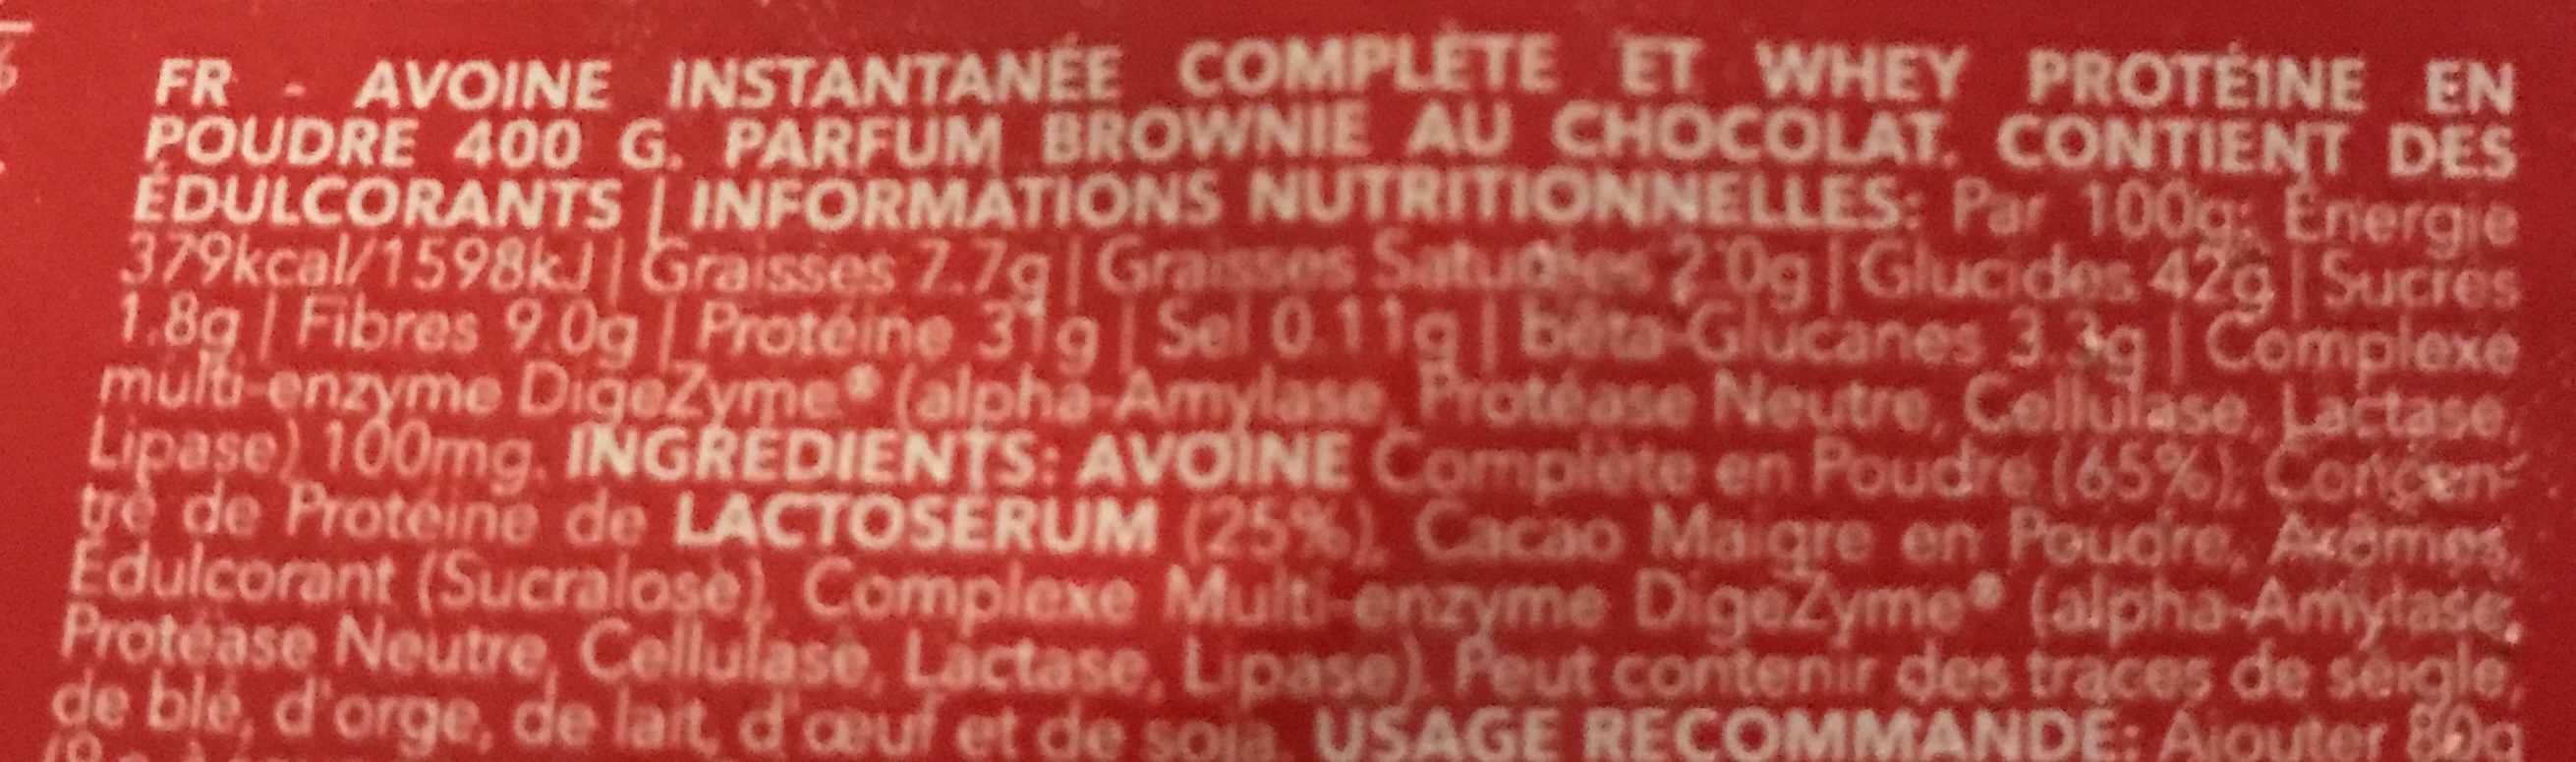 Oatmeal + Whey Protein - Ingrediënten - fr